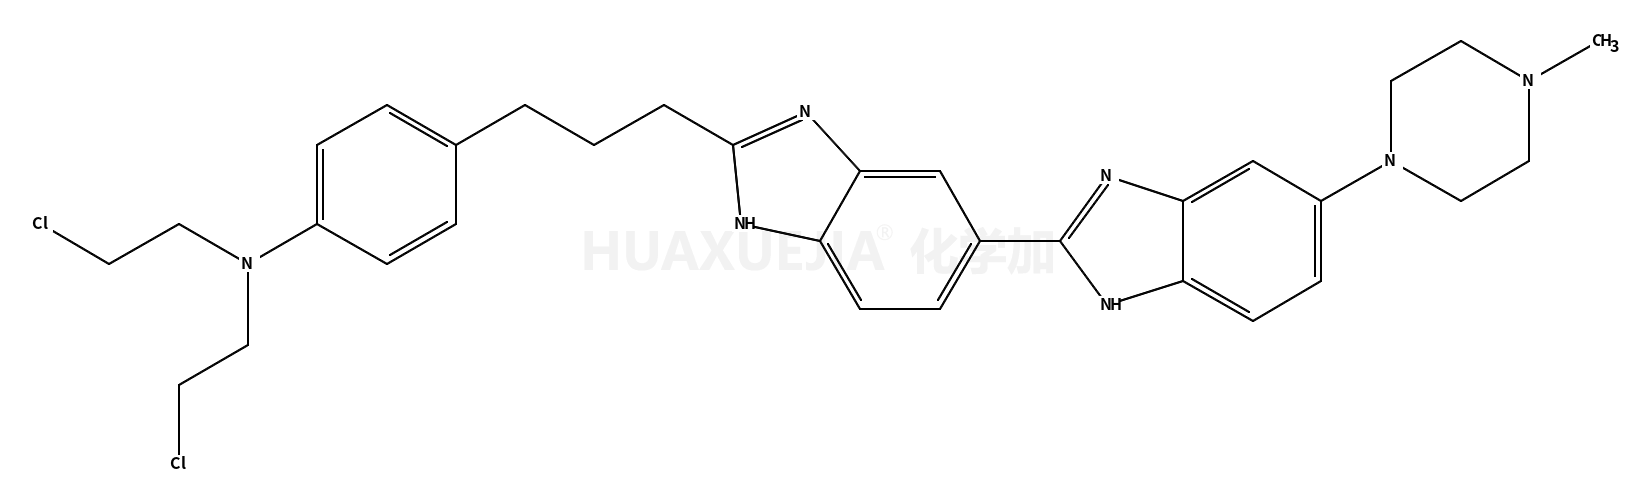 N,N-bis(2-chloroethyl)-4-[3-[6-[6-(4-methylpiperazin-1-yl)-1H-benzimidazol-2-yl]-1H-benzimidazol-2-yl]propyl]aniline